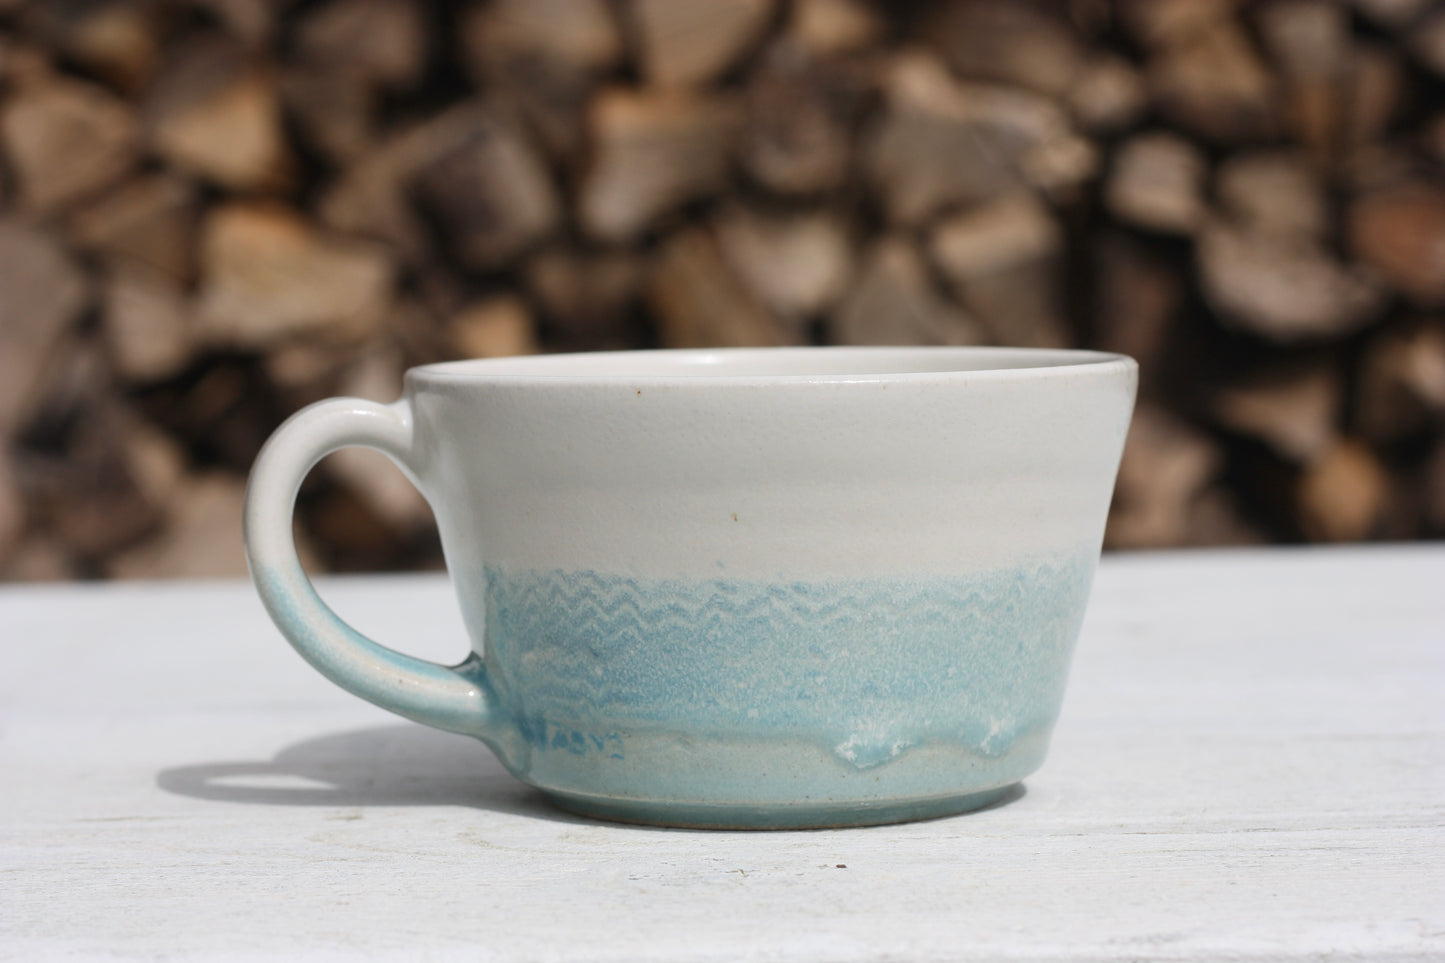 Cornish waves glazed Mug 13oz 380ml Medium Mug in Blue and White Glaze